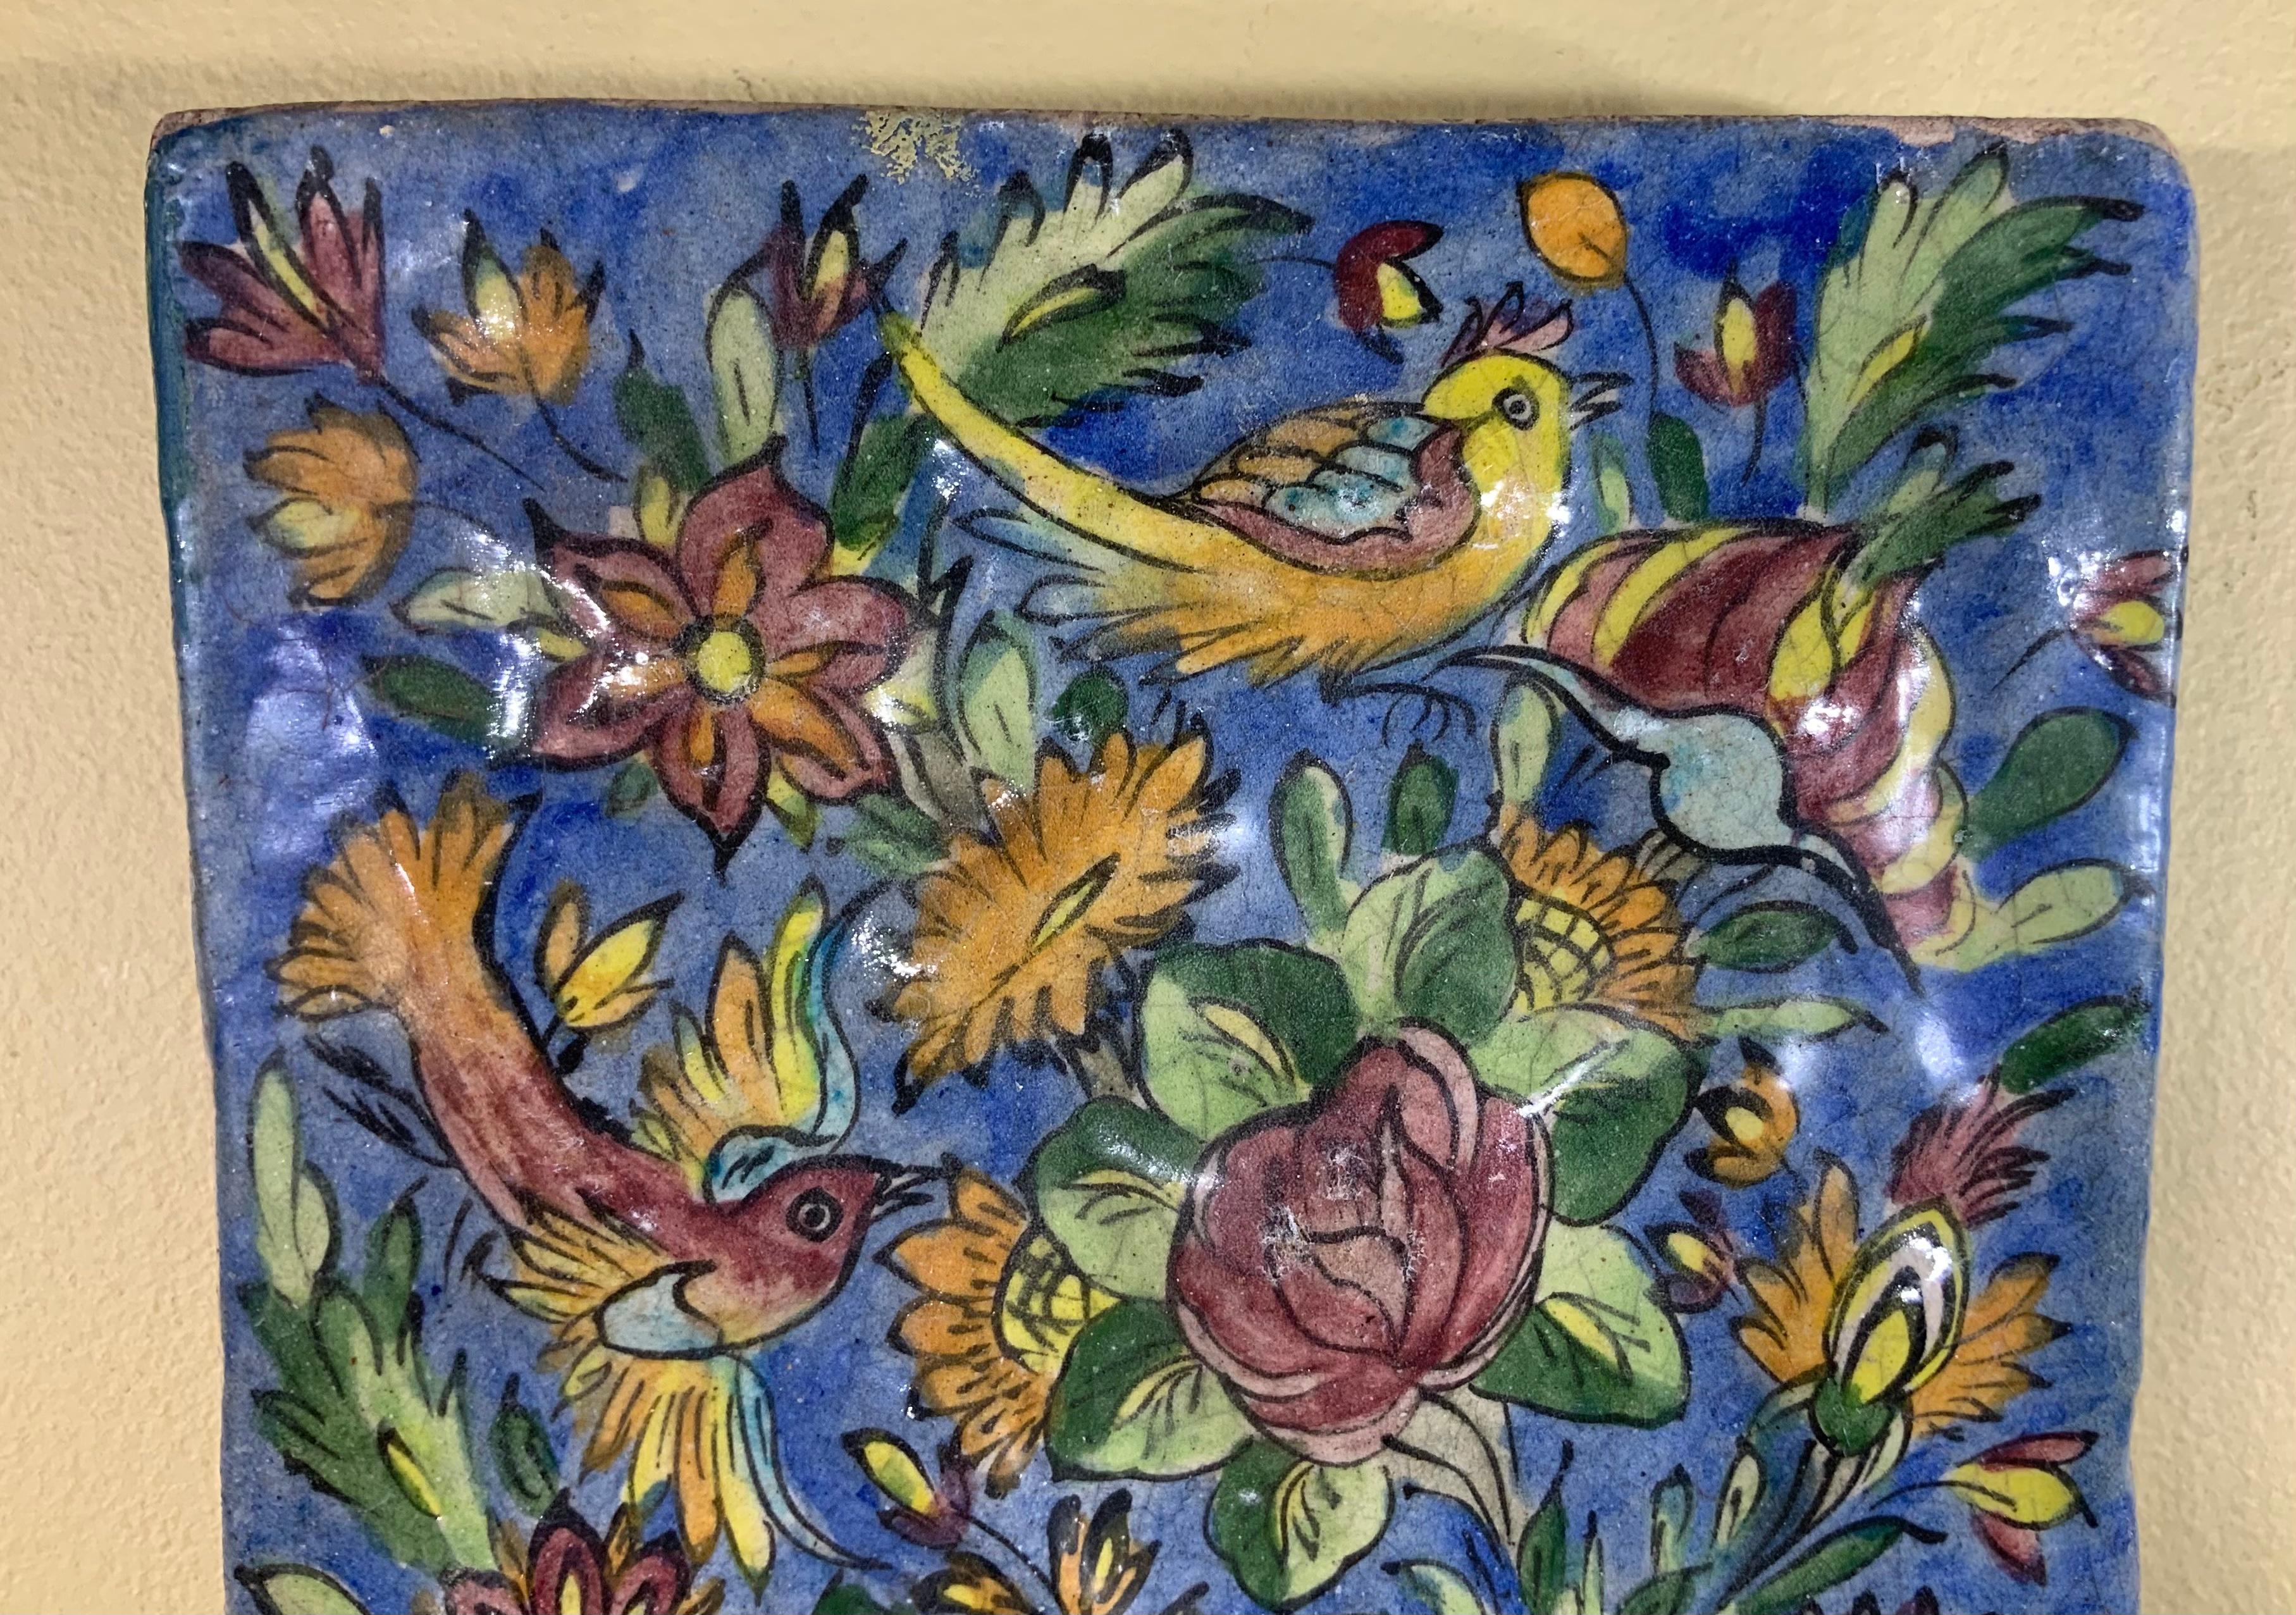 Exceptionnel carreau de faïence peint et émaillé à la main avec un magnifique paysage d'oiseaux volant entre des vignes et des fleurs colorées sur un fond bleu. Peut être accroché au mur.
Un superbe objet d'art à exposer au mur.

 